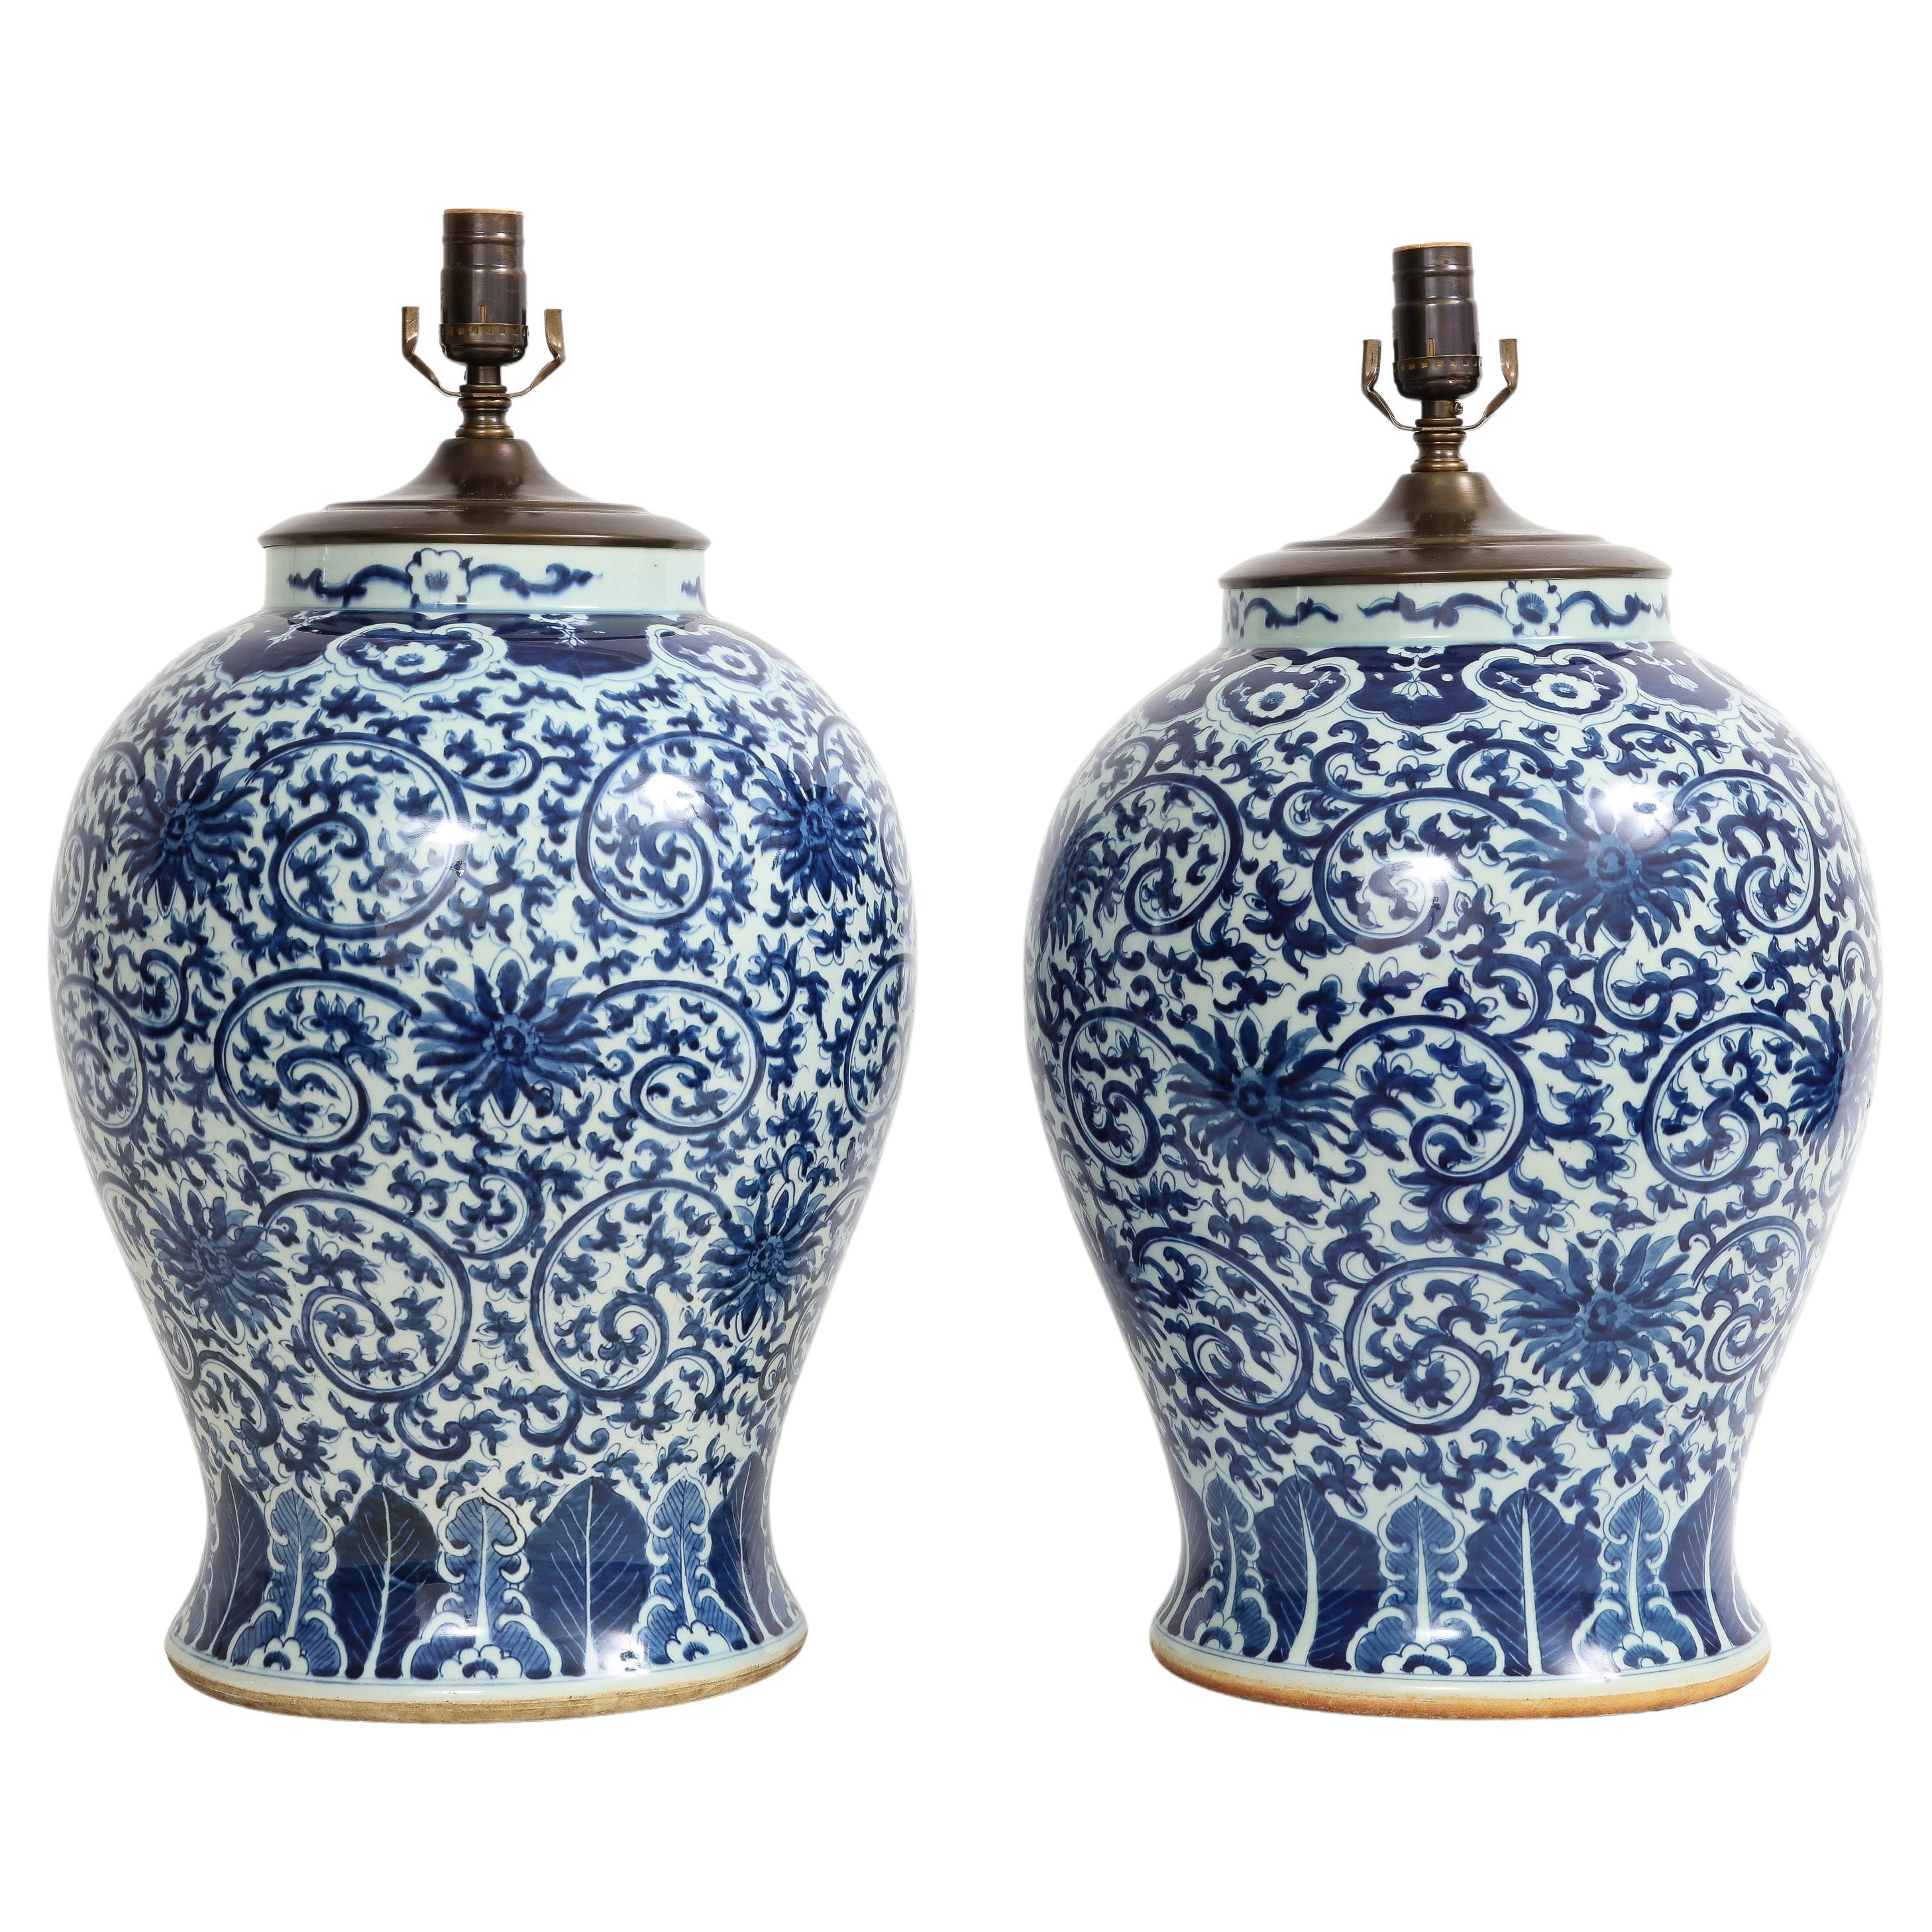 Paar chinesische blau-weiße Vasen aus der Qing-Dynastie des 19. Jahrhunderts, umgewandelt in Lampen